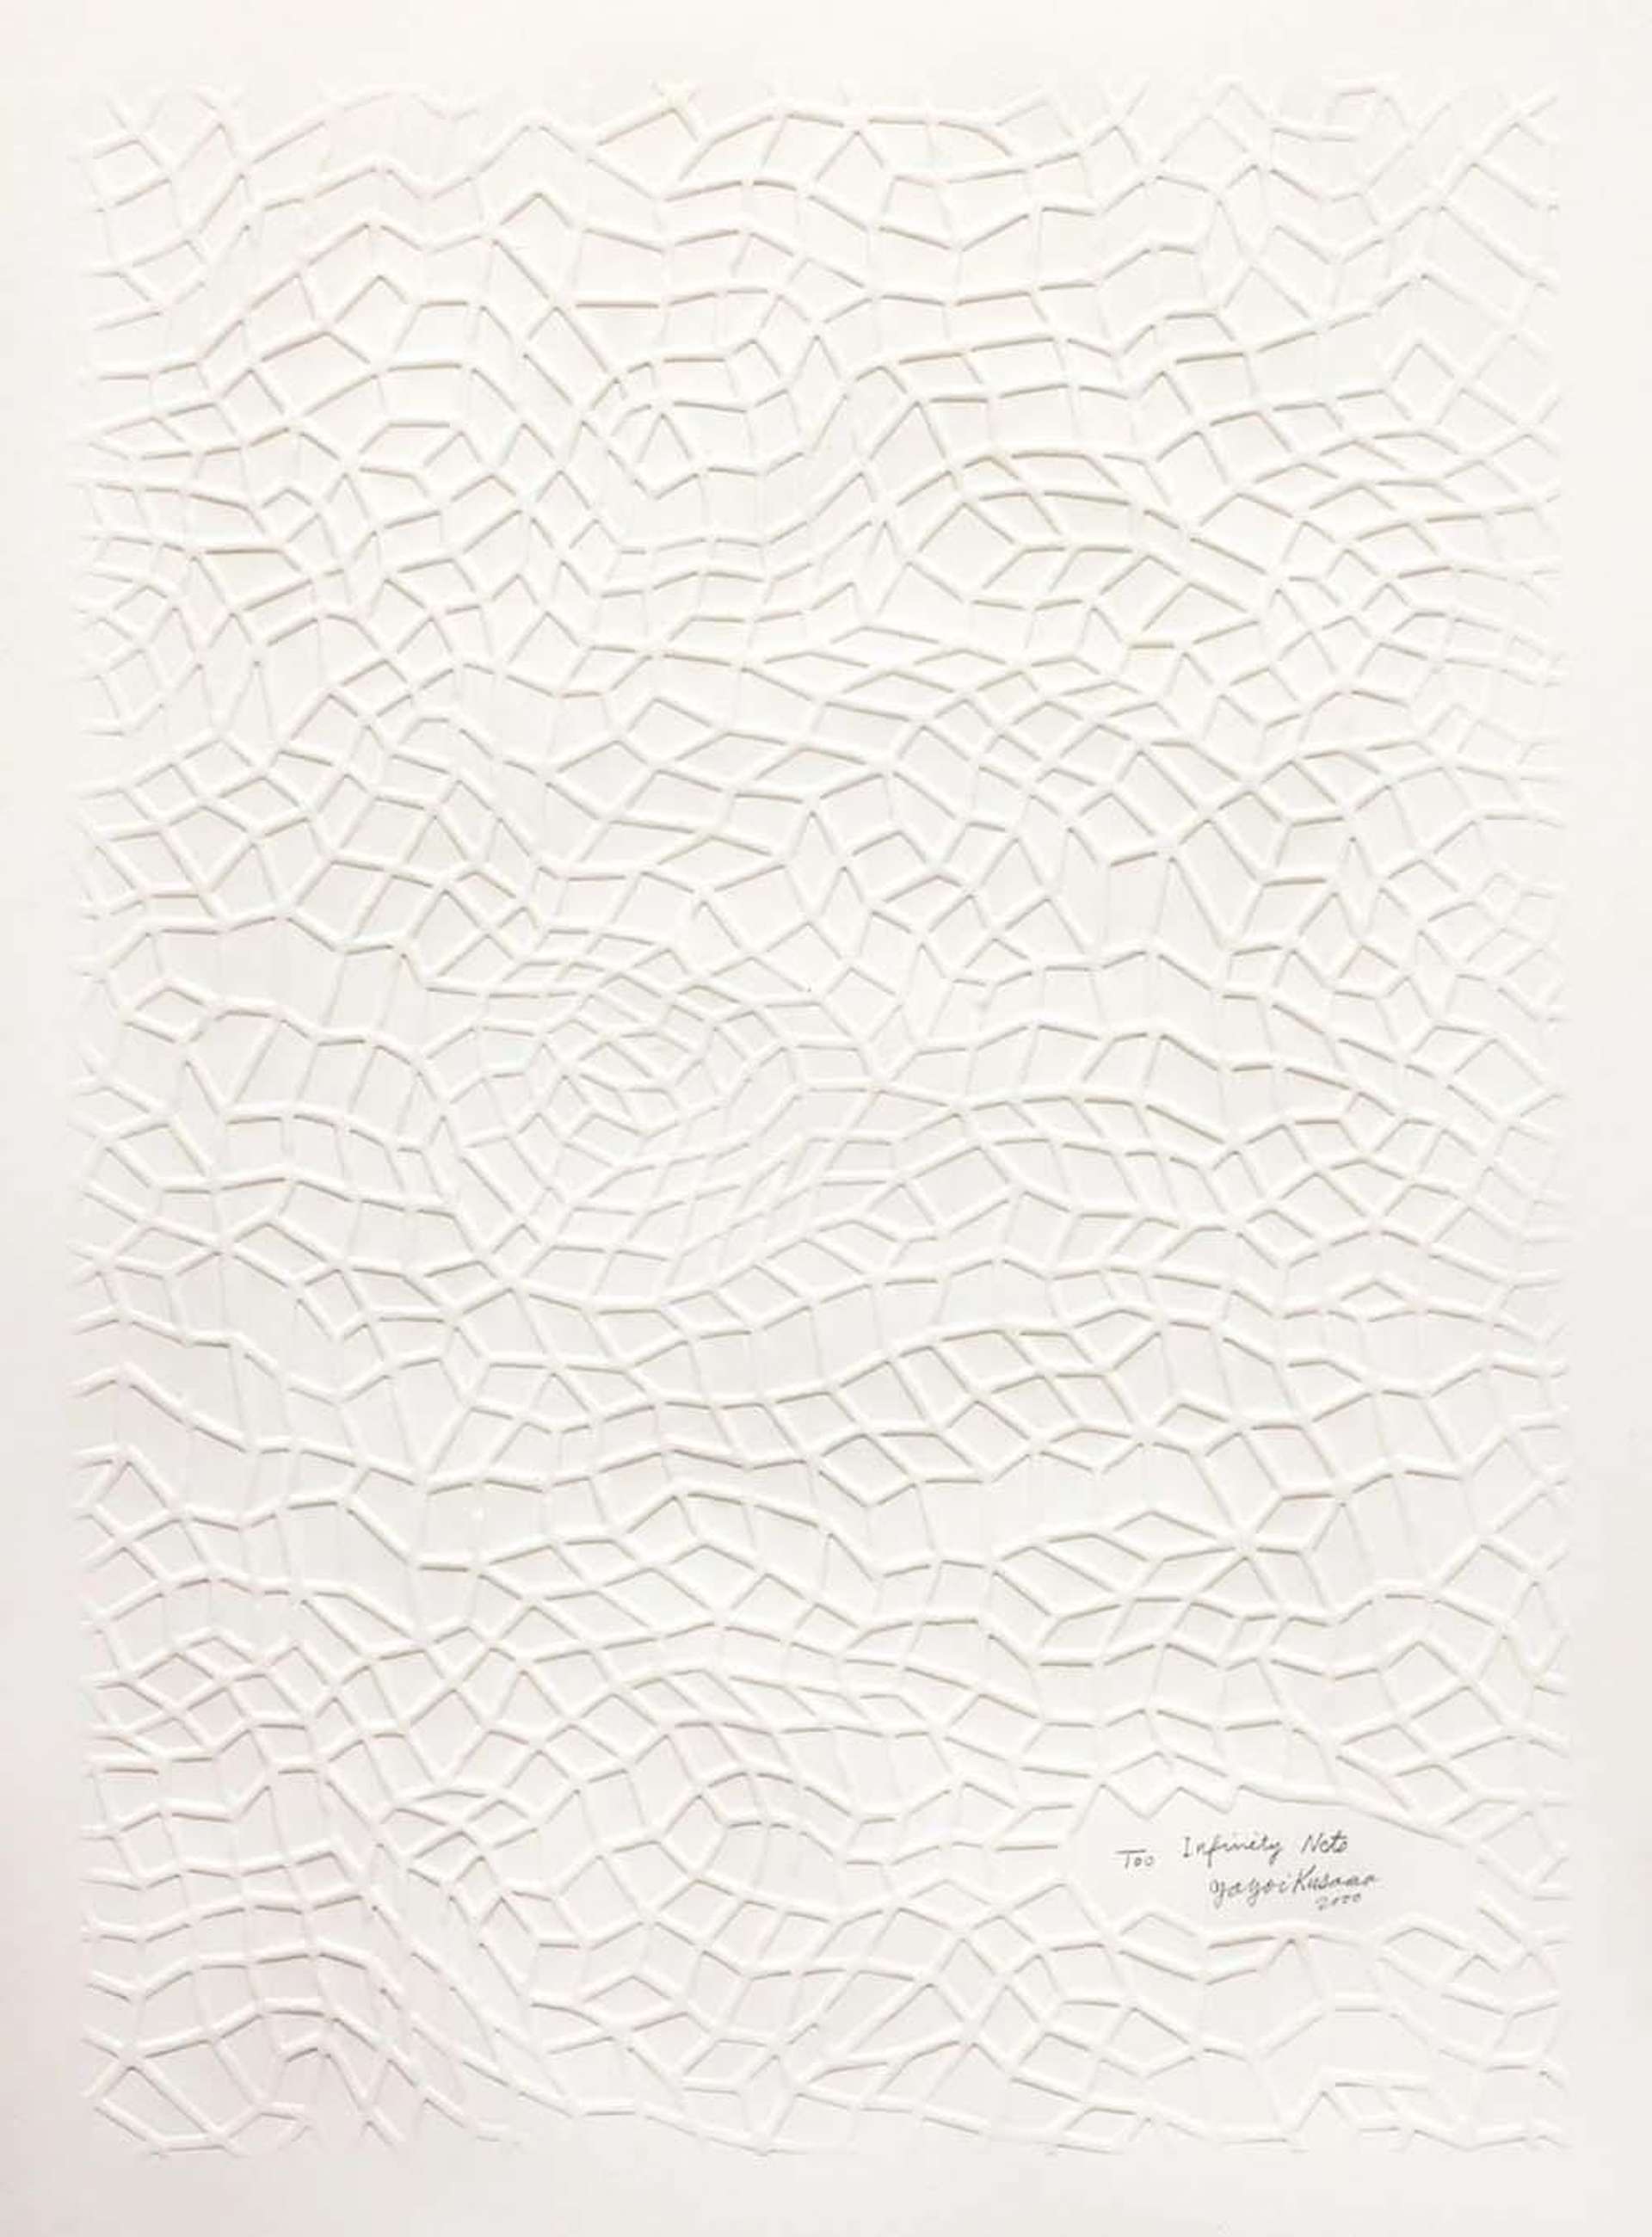 Yayomi Kusama's Infinity Nets, Kusama 297. A screenprint of a white geometric pattern over a white background 